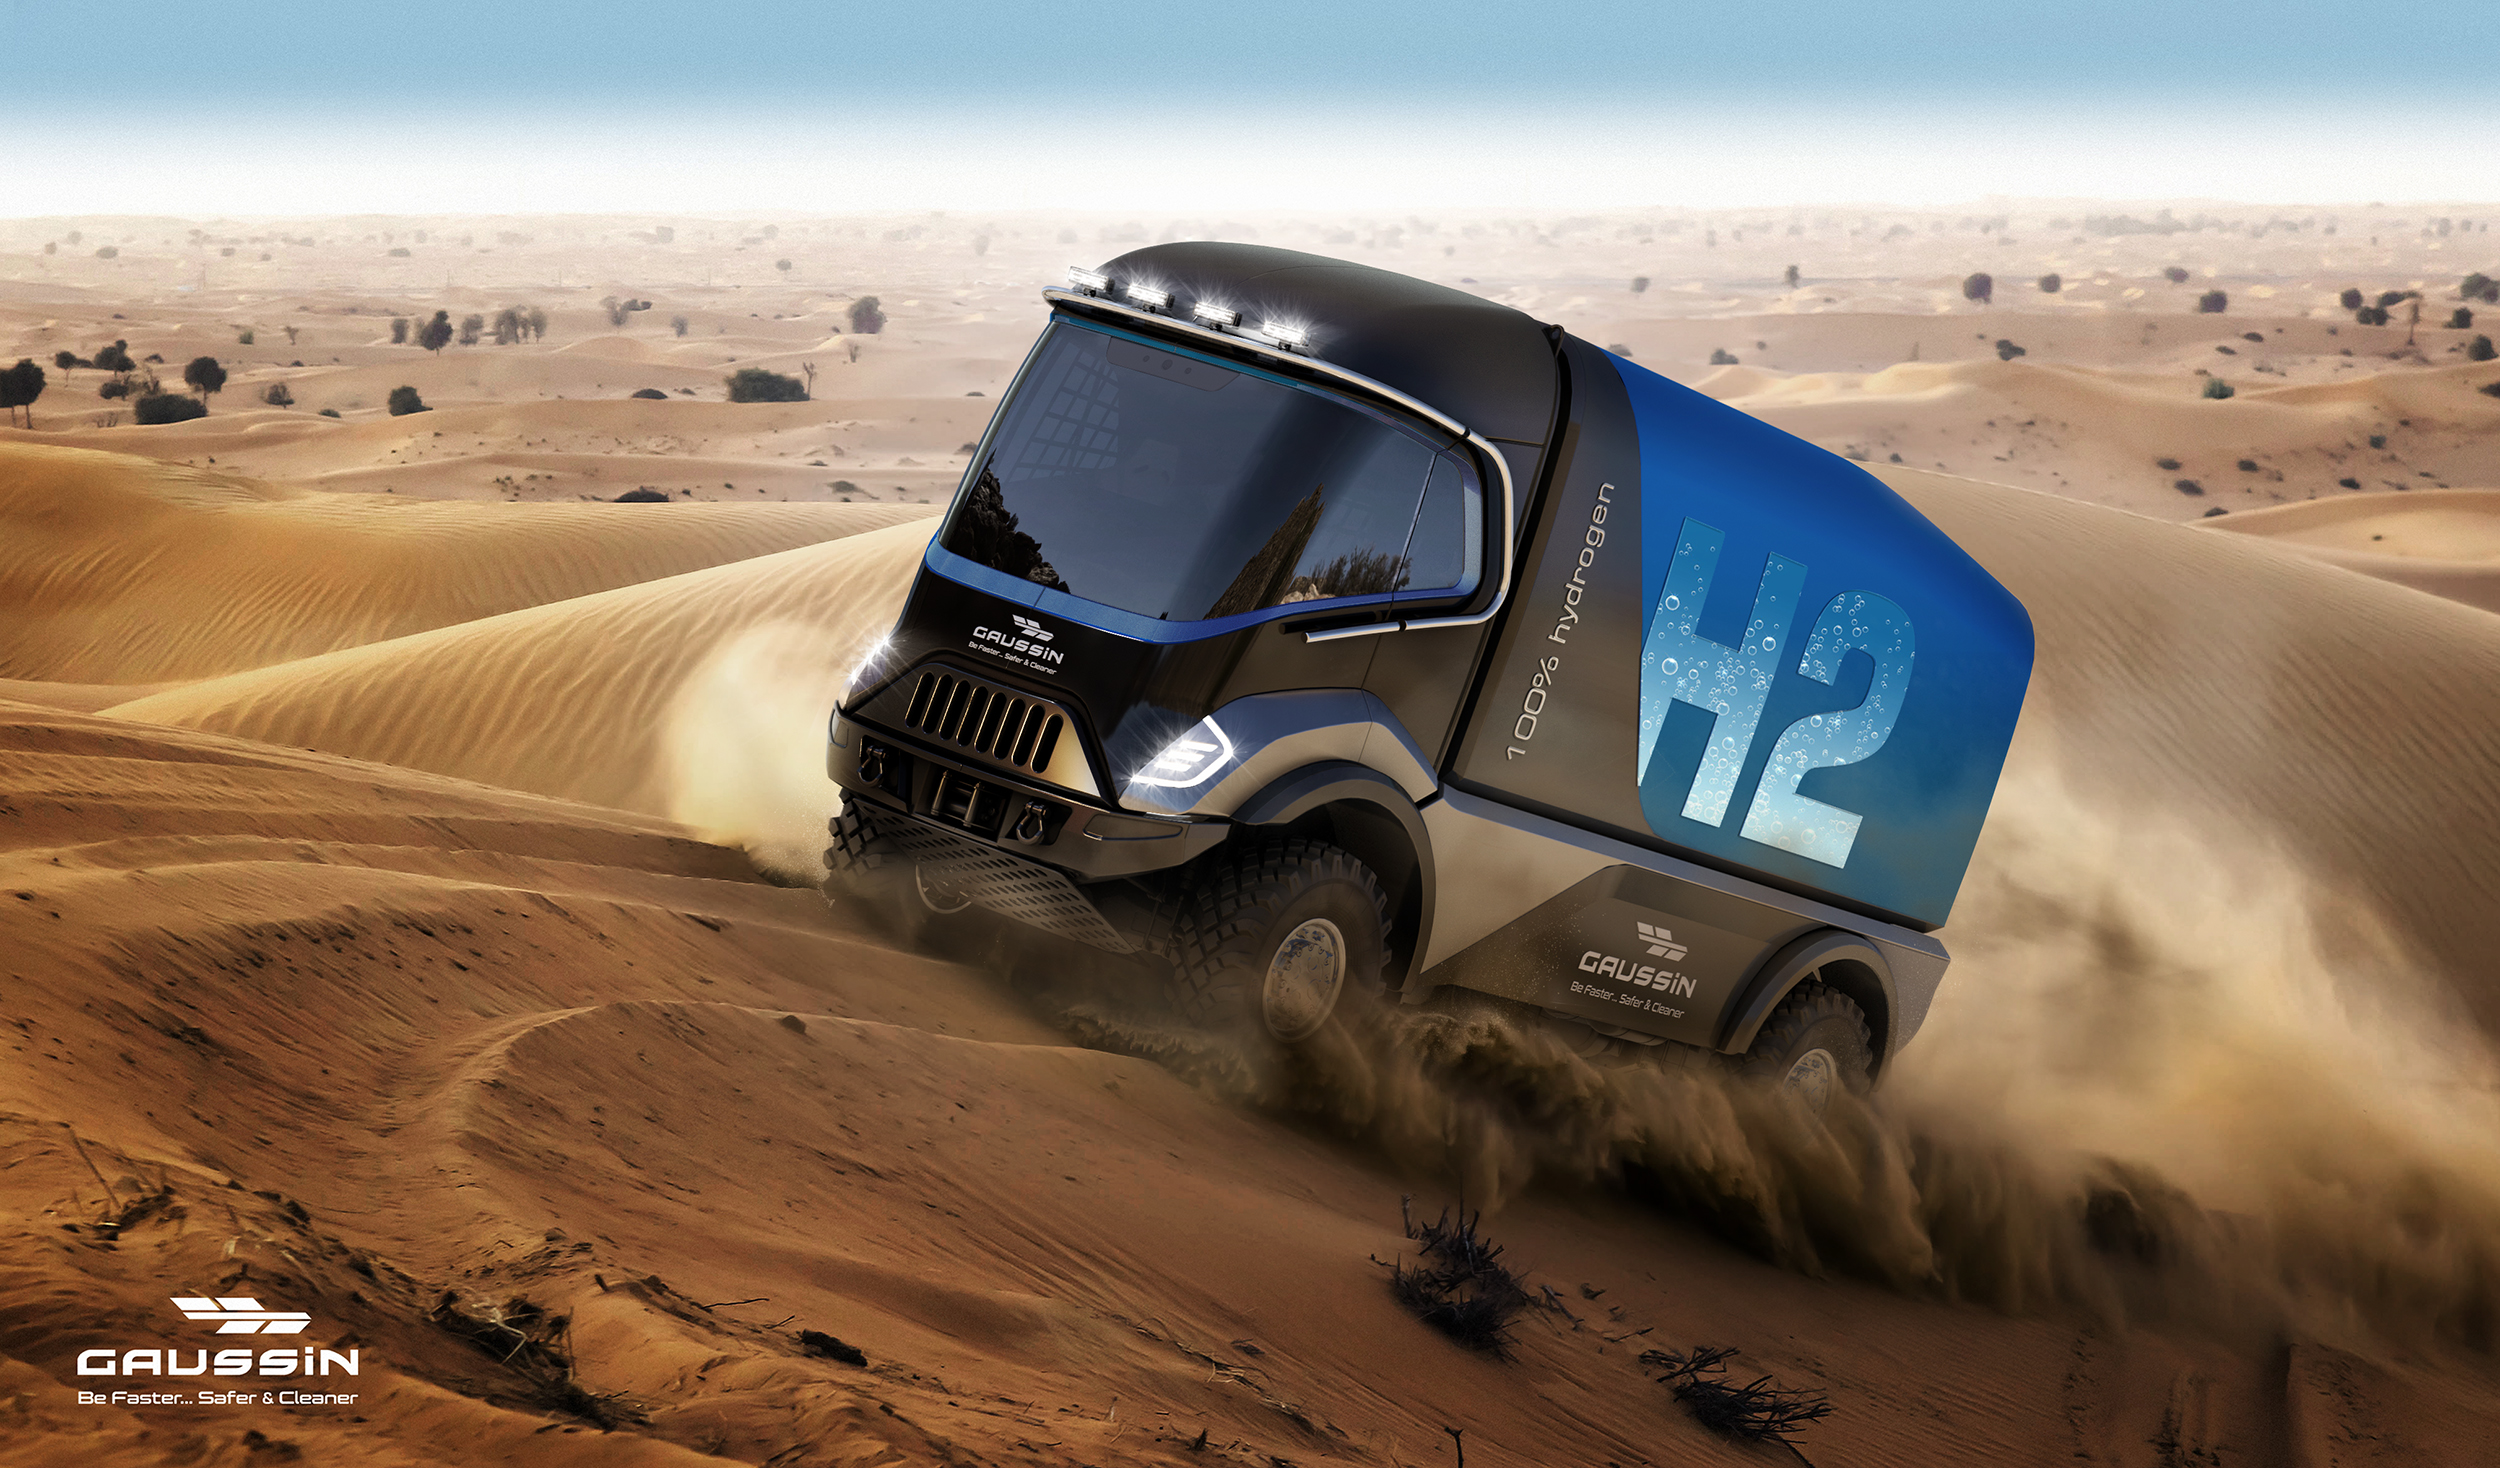 Lire la suite à propos de l’article Gaussin va faire des véhicules H2 en Arabie Saoudite